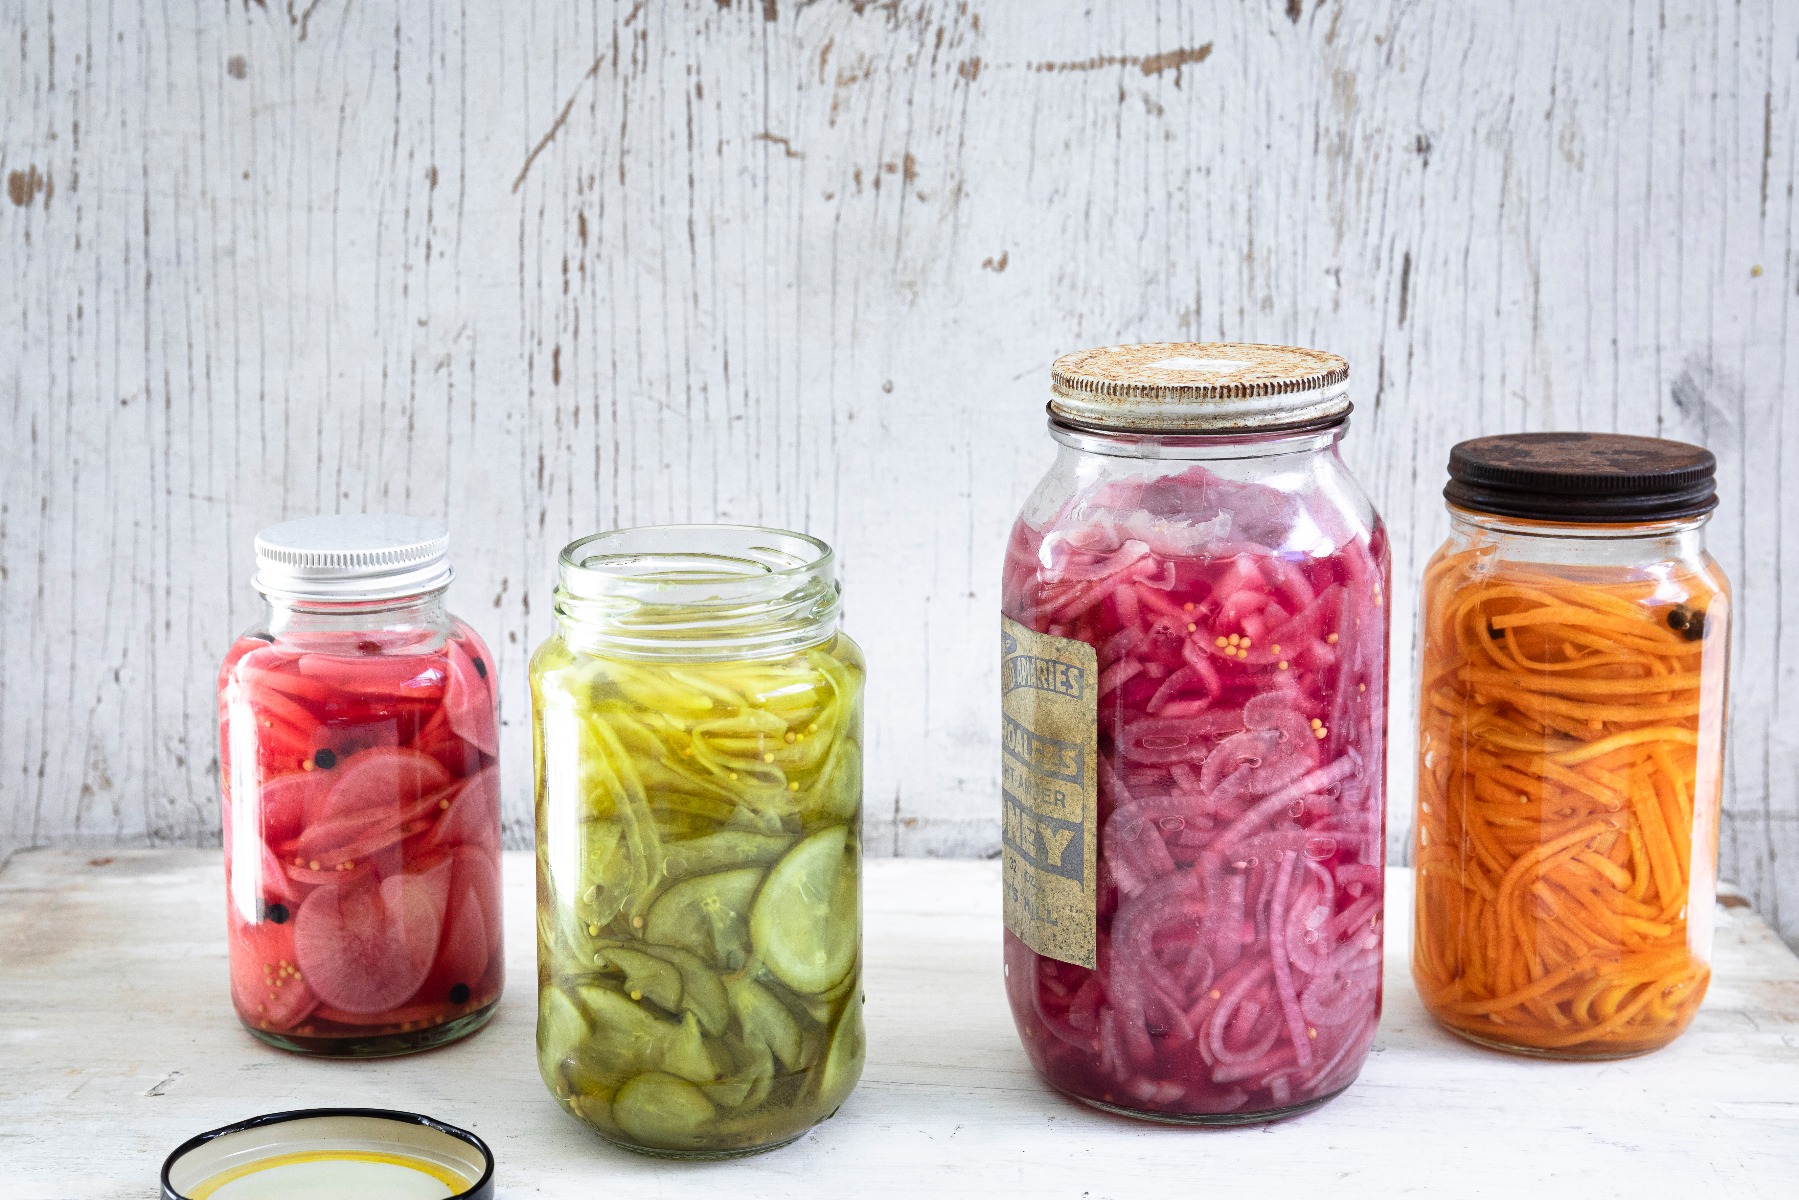 Pickled veggies in jars